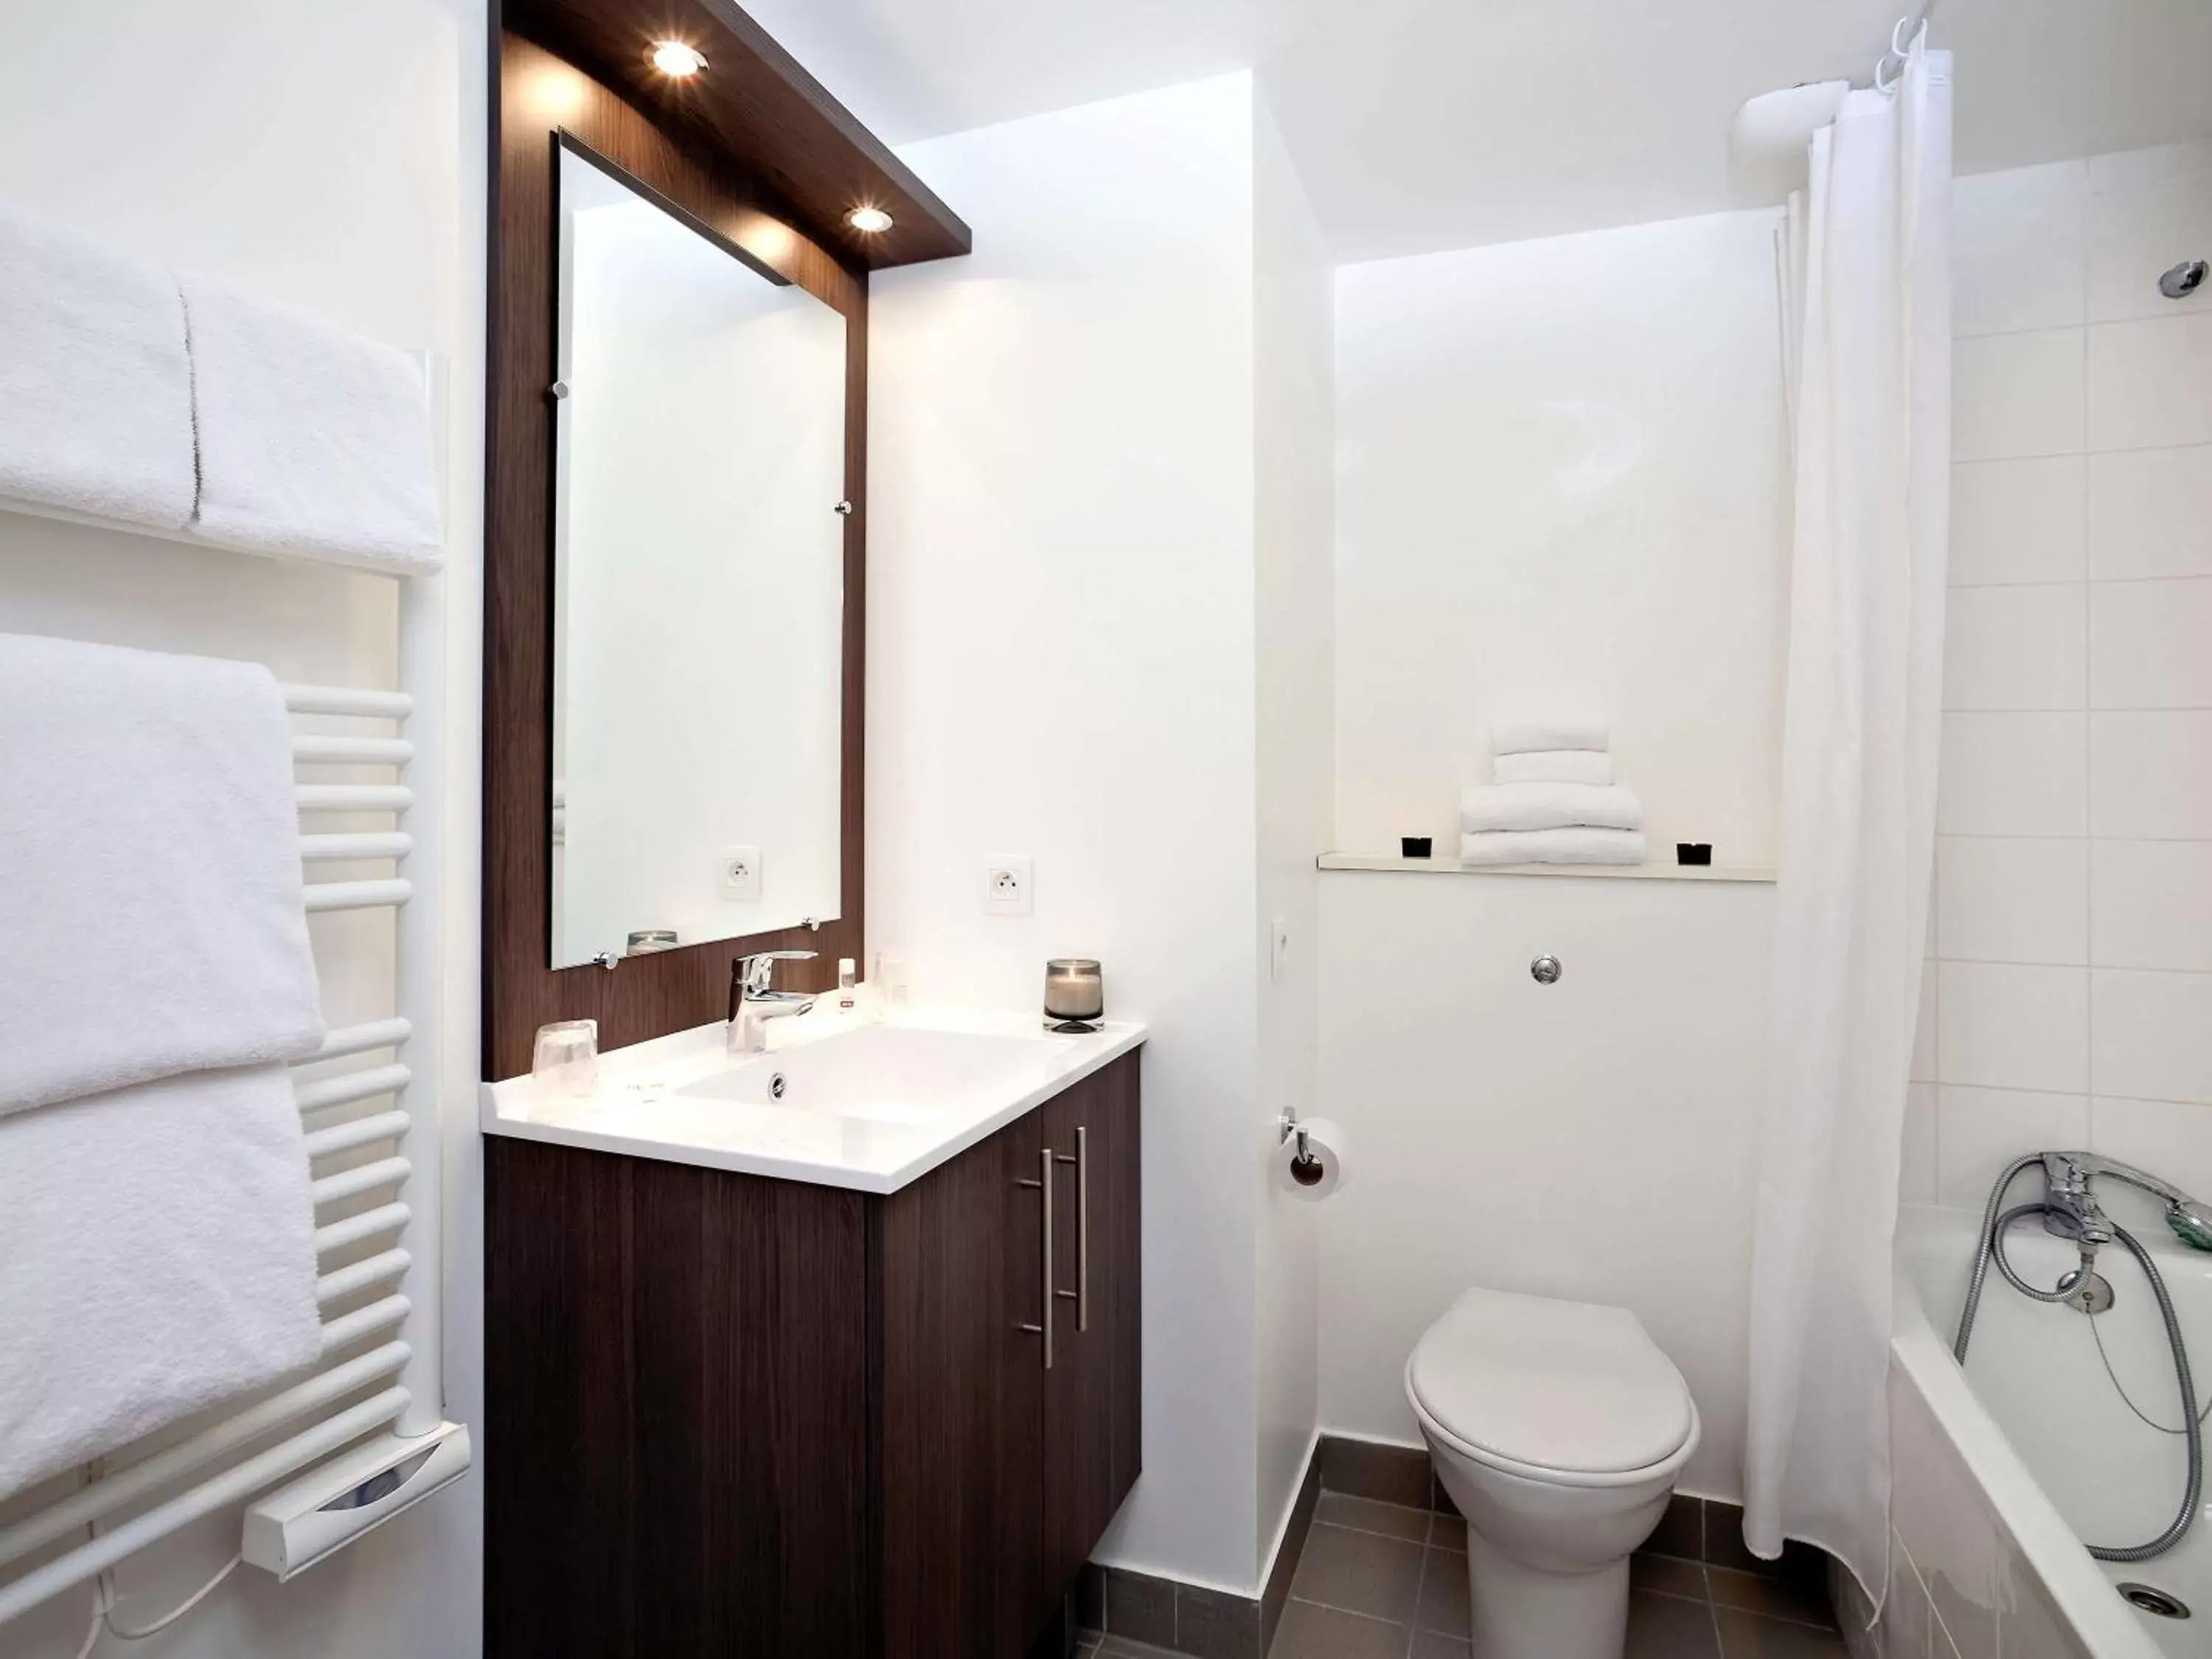 Photo of the whole room, Bathroom in Aparthotel Adagio Access Paris Asnières